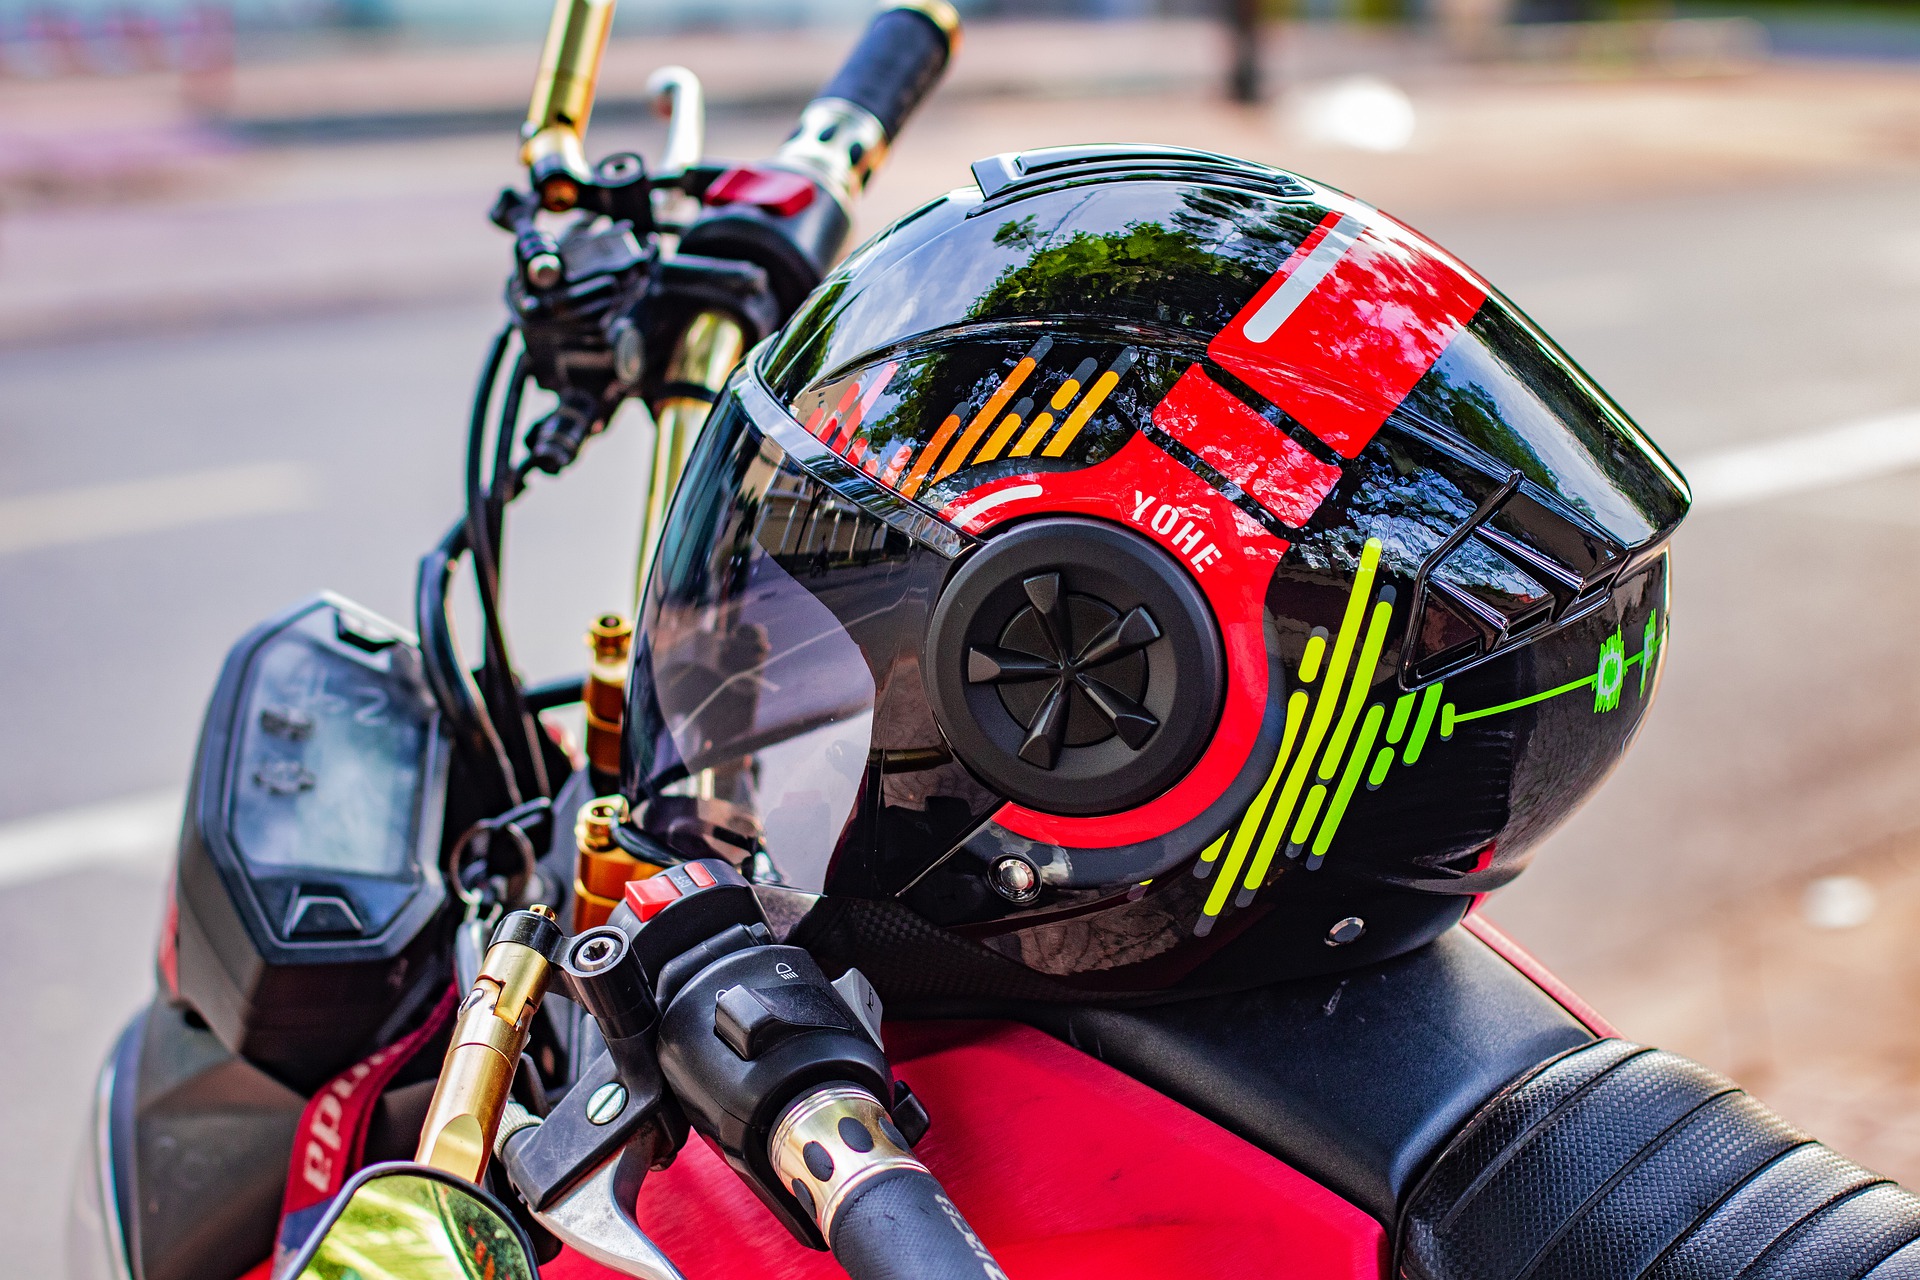 Où trouver les meilleurs équipements et accessoires pour votre moto ?